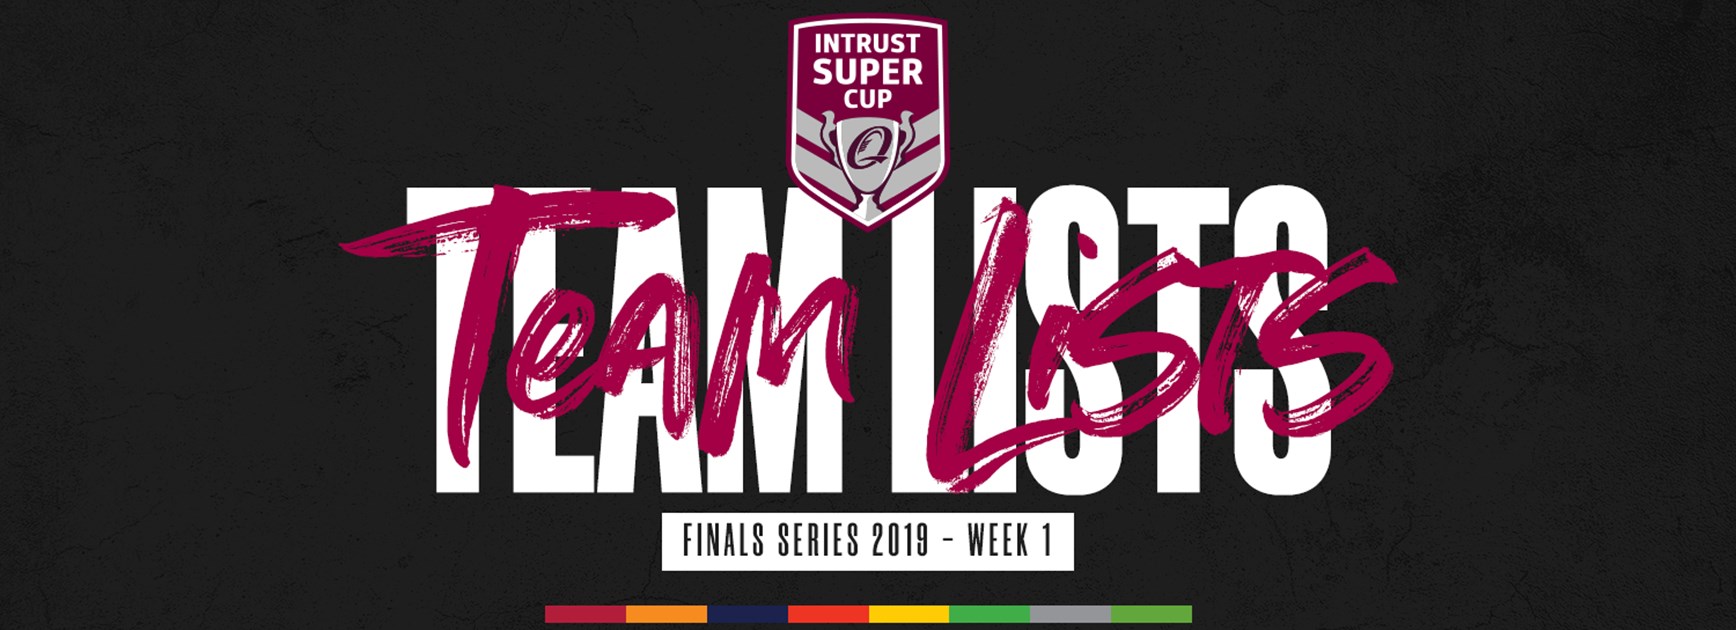 Intrust Super Cup finals Week 1 team lists